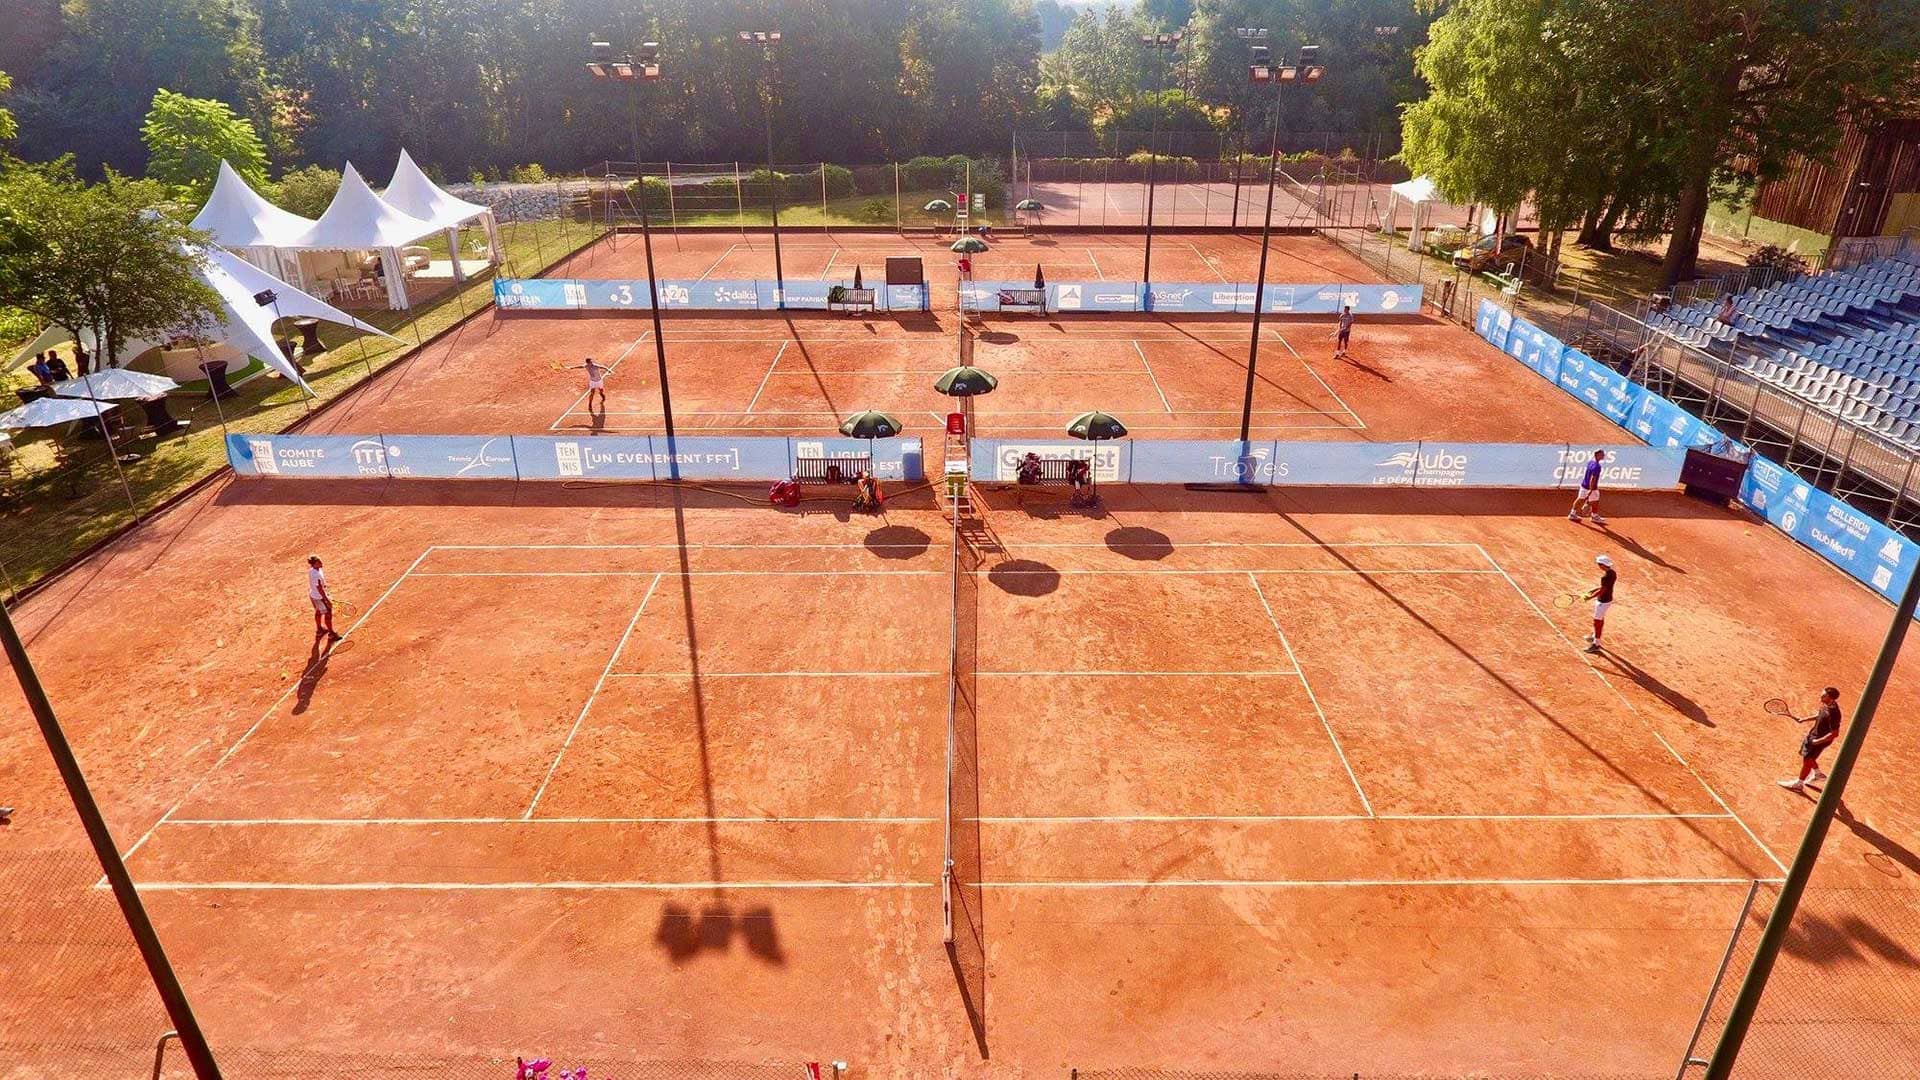 Internationaux de Tennis de Troyes WC Arthur Fils (FRA) vs Q Francesco Maestrelli (ITA) Challenger Tour Challenger TV ATP Tour Tennis